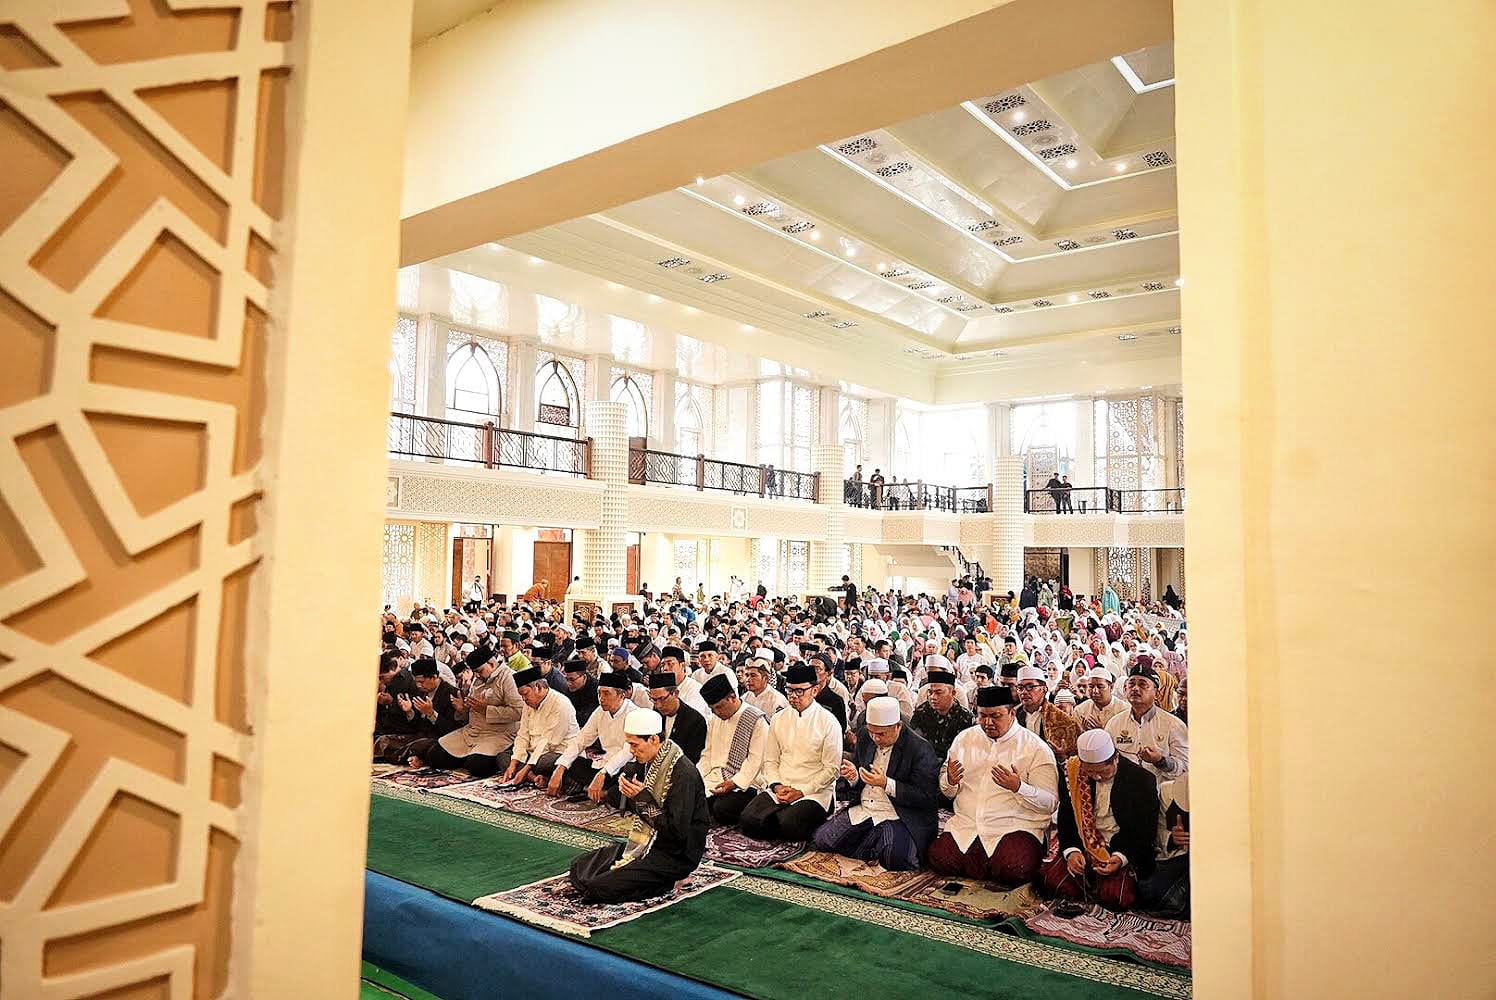 Ribuan jamaah saat beribadah di Masjid Agung Kota Bogor. (Yudha Prananda / Jabar Ekspres)